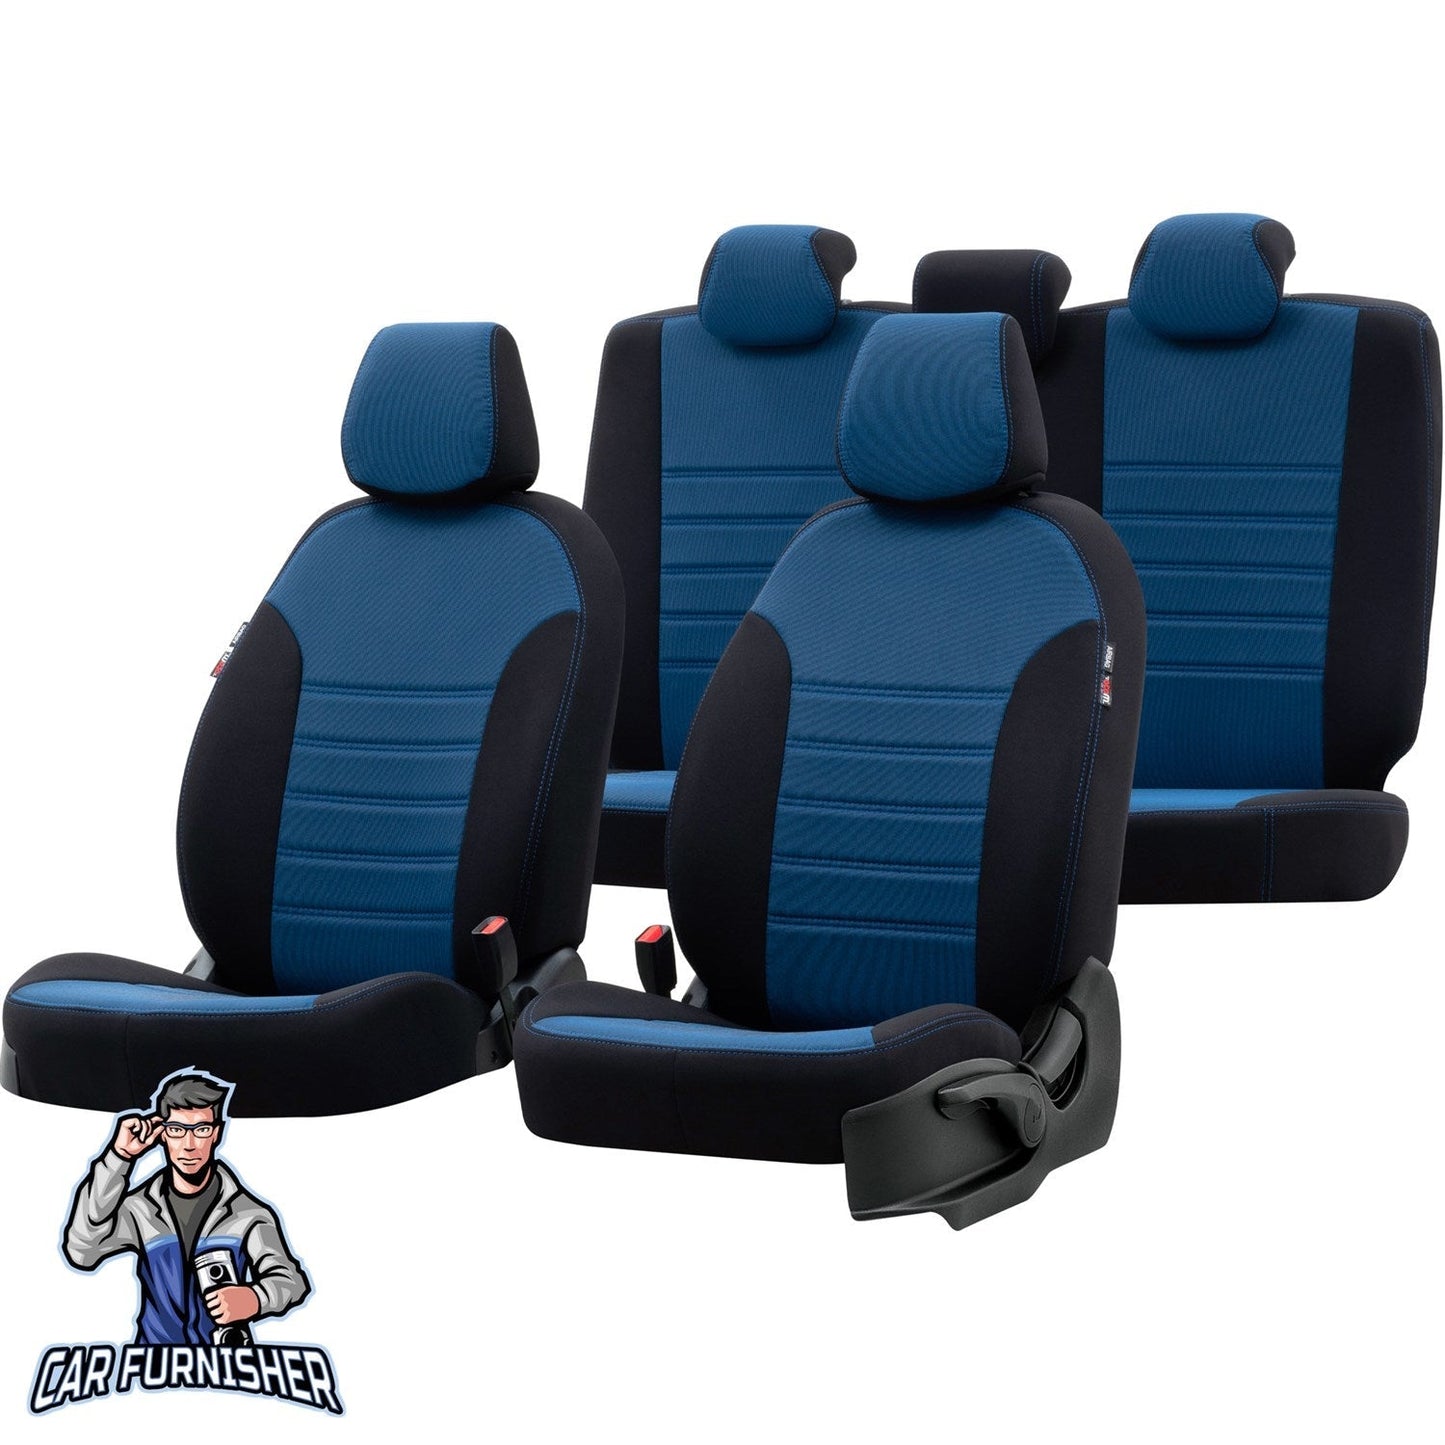 Chery Tiggo Seat Covers Original Jacquard Design Blue Jacquard Fabric